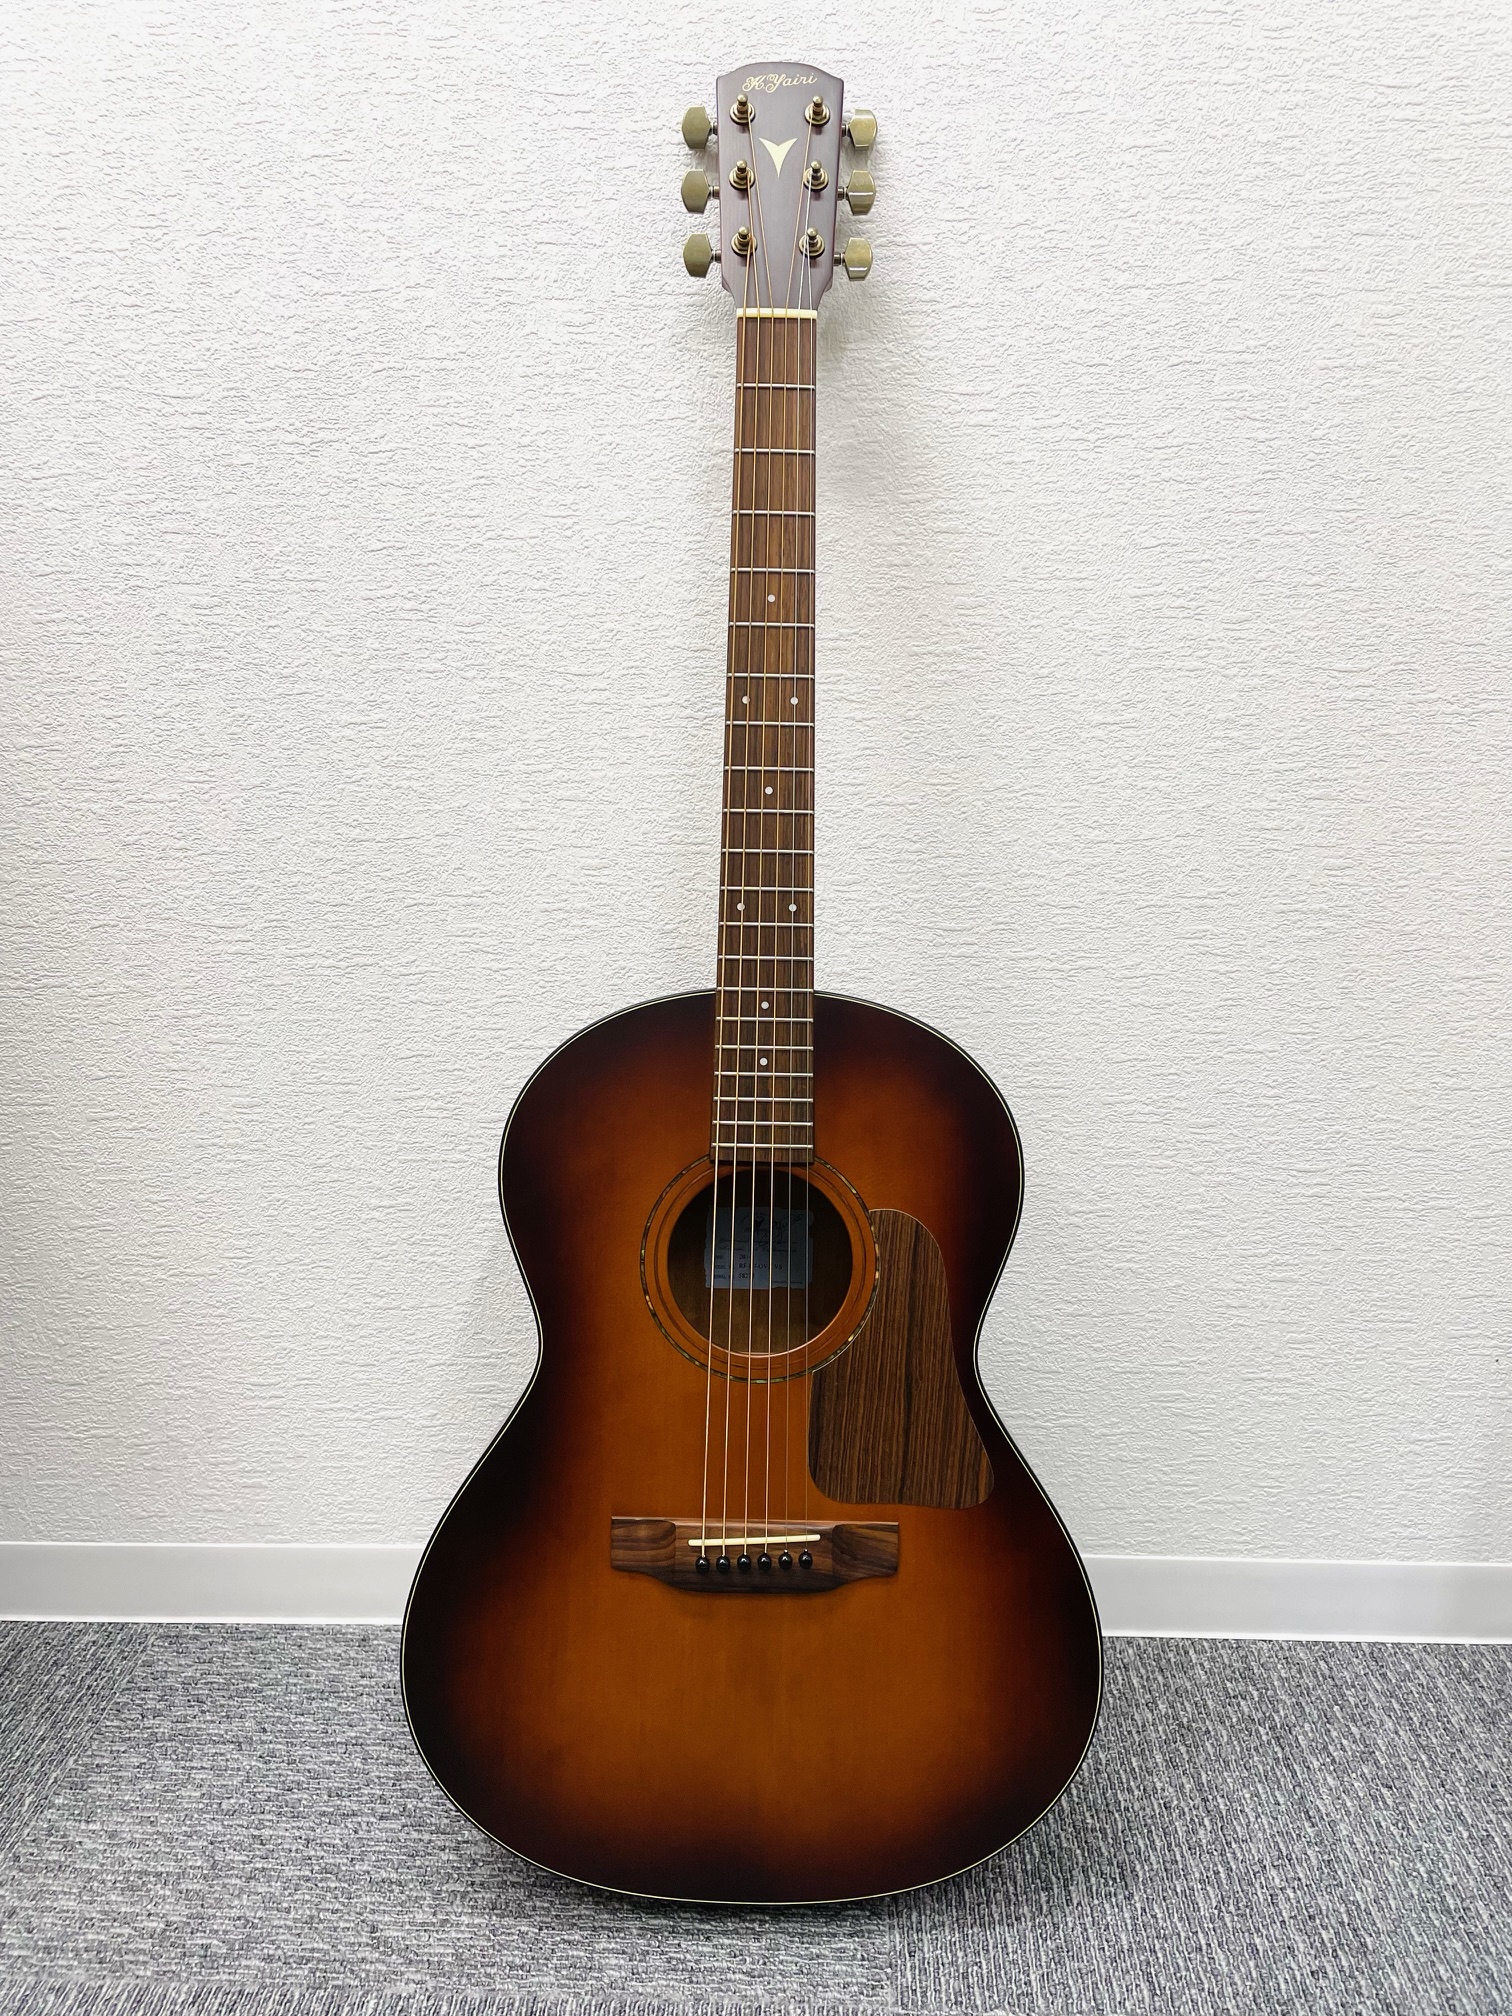 K.yairi ヤイリギター アコースティック ギター RF-K7-OVA VS 58270 